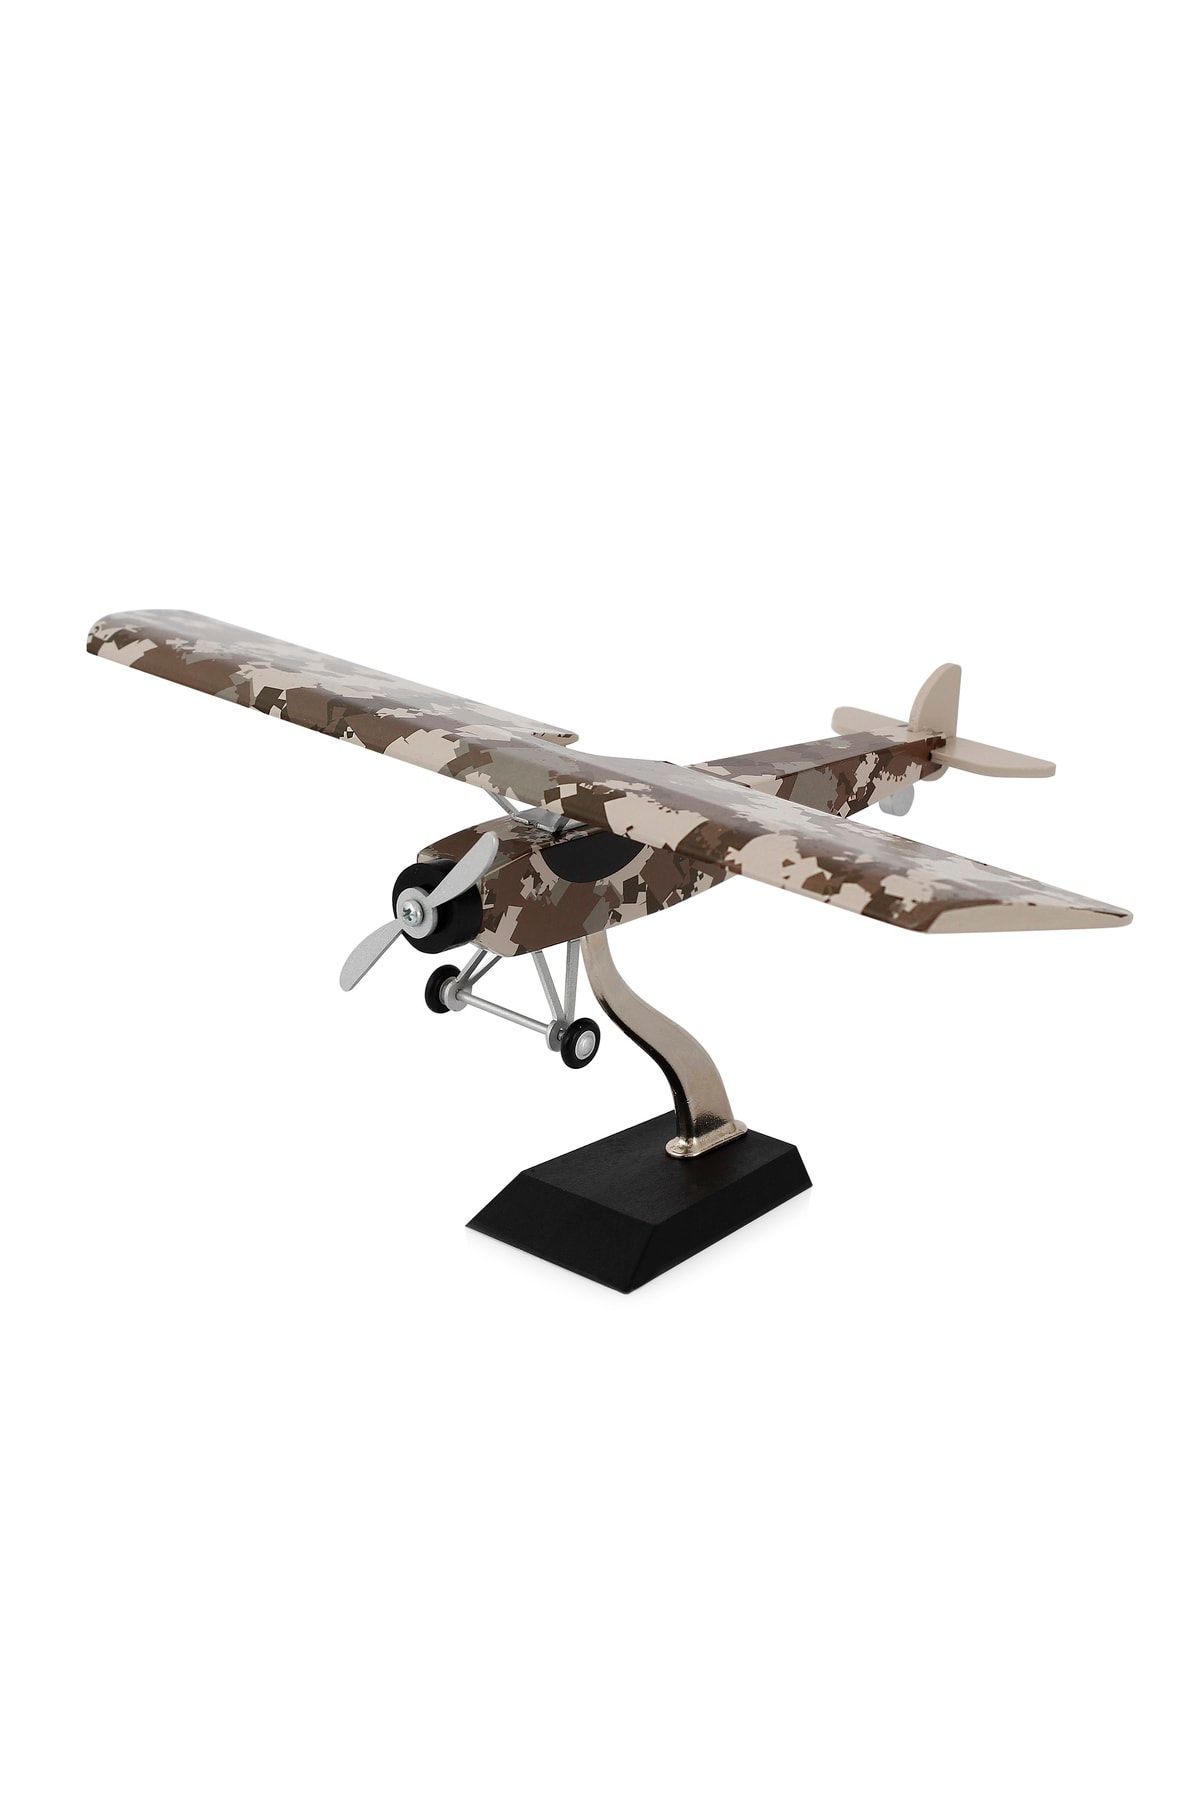 zekupp - Ahşap Maket Uçak, Askeri Kamuflaj Tasarımlı Uçak Maketi Model A